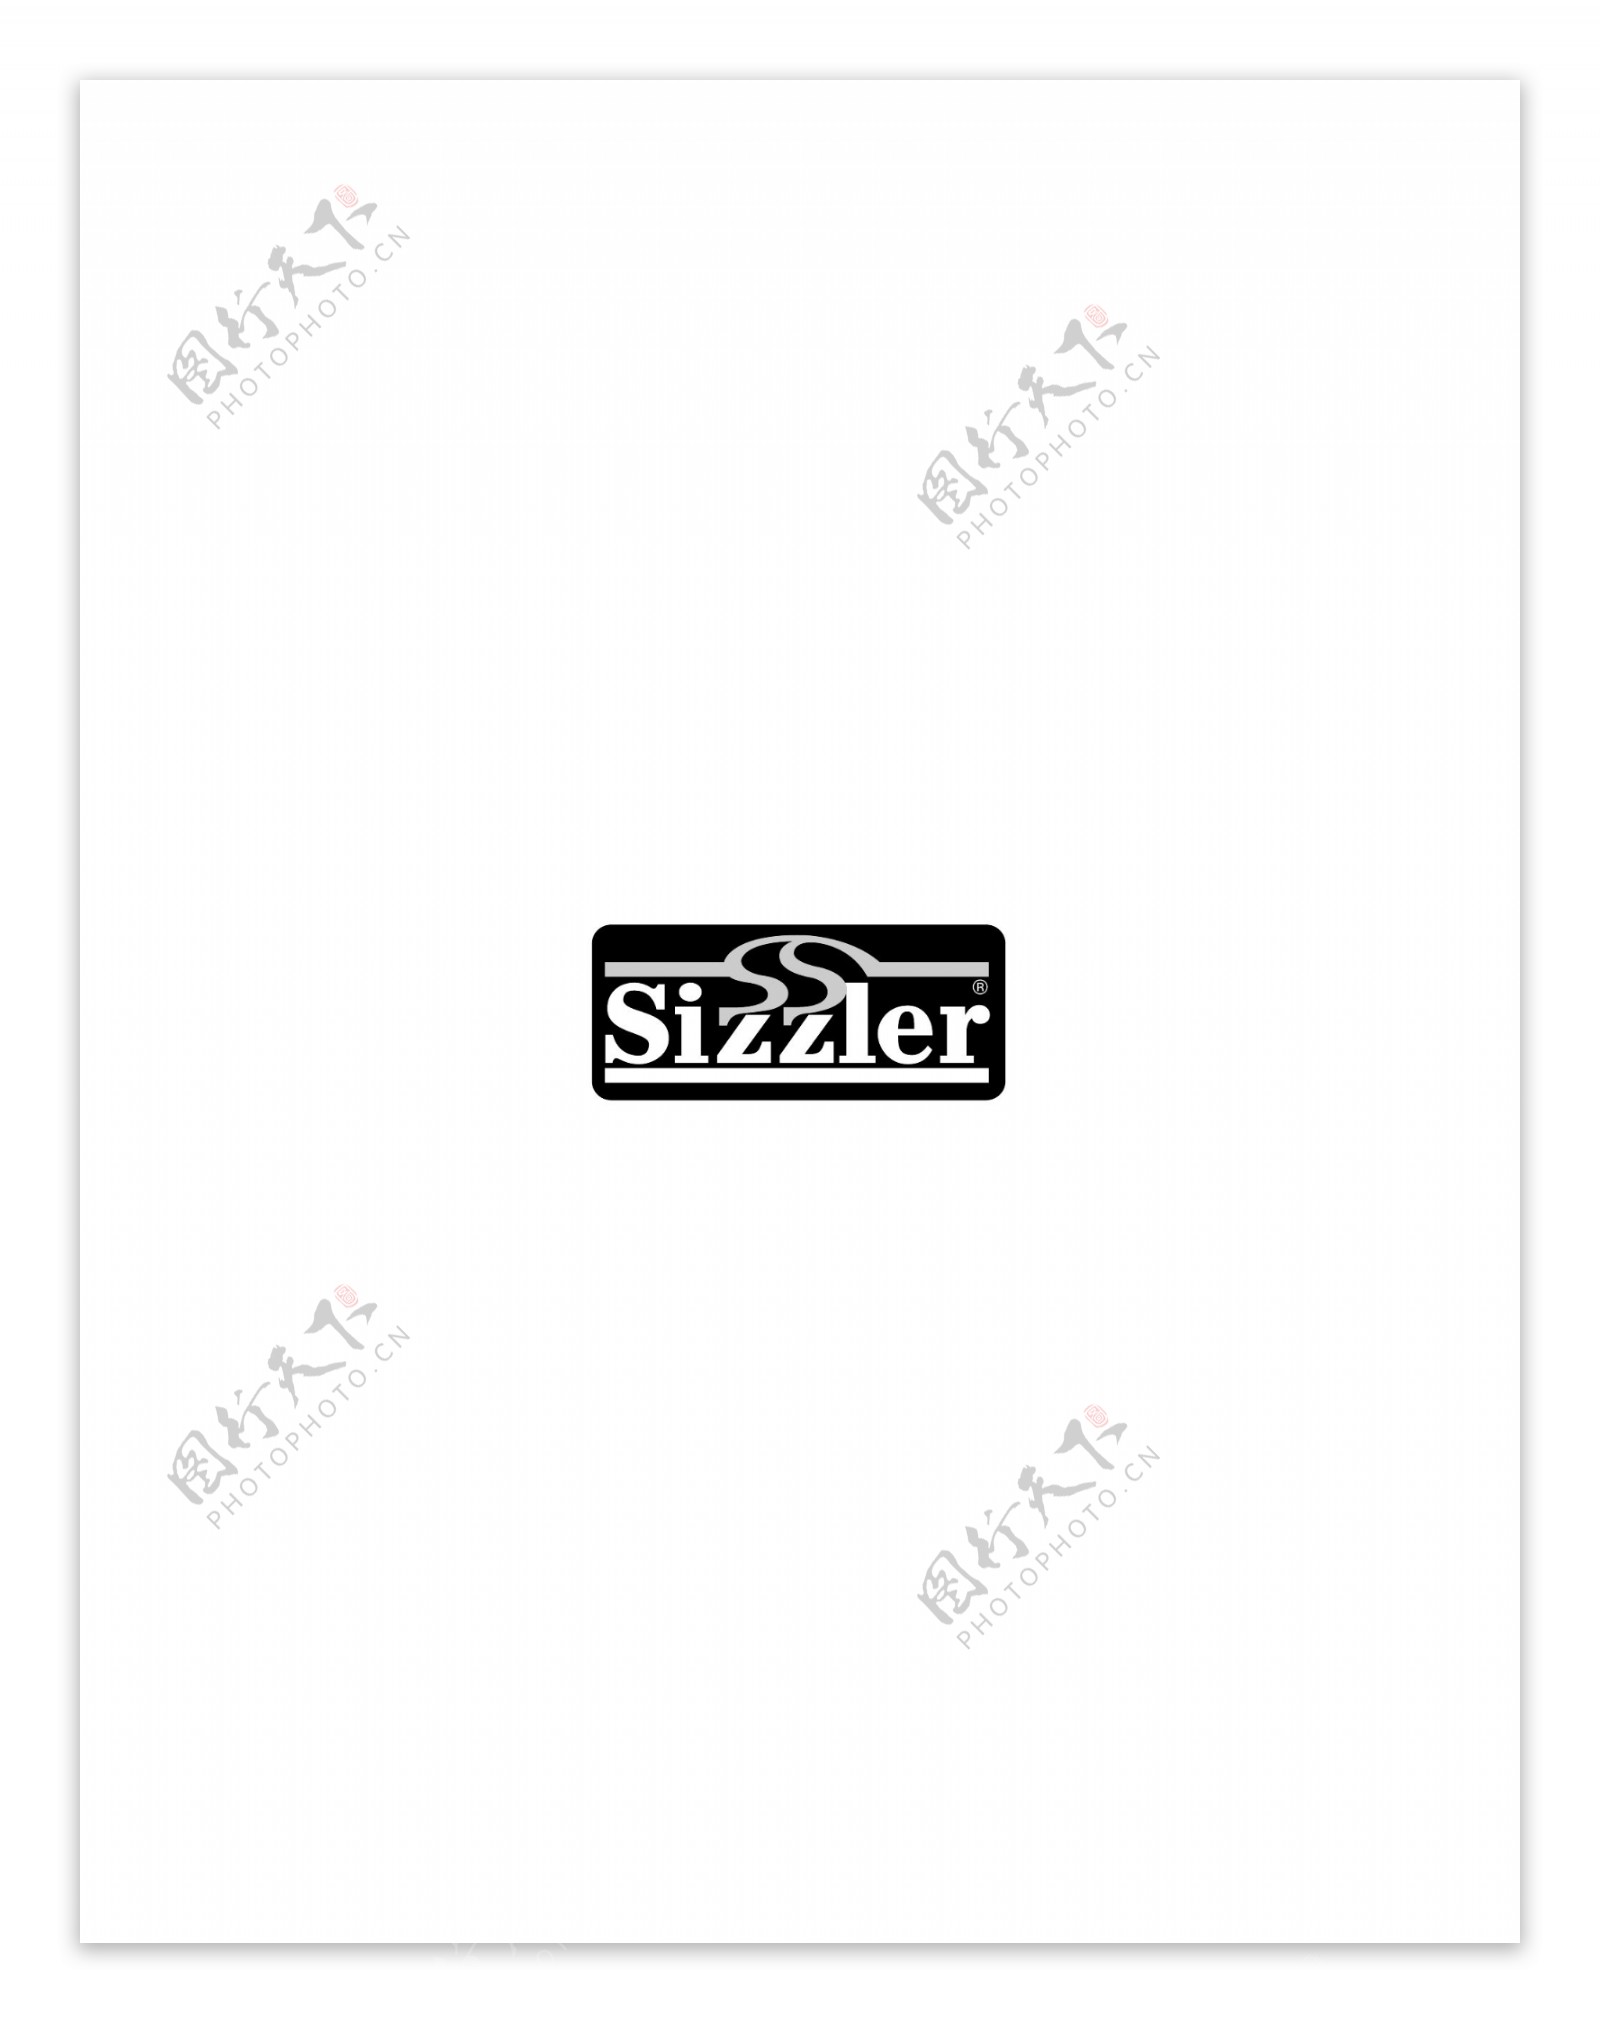 Sizzler1logo设计欣赏Sizzler1咖啡馆标志下载标志设计欣赏